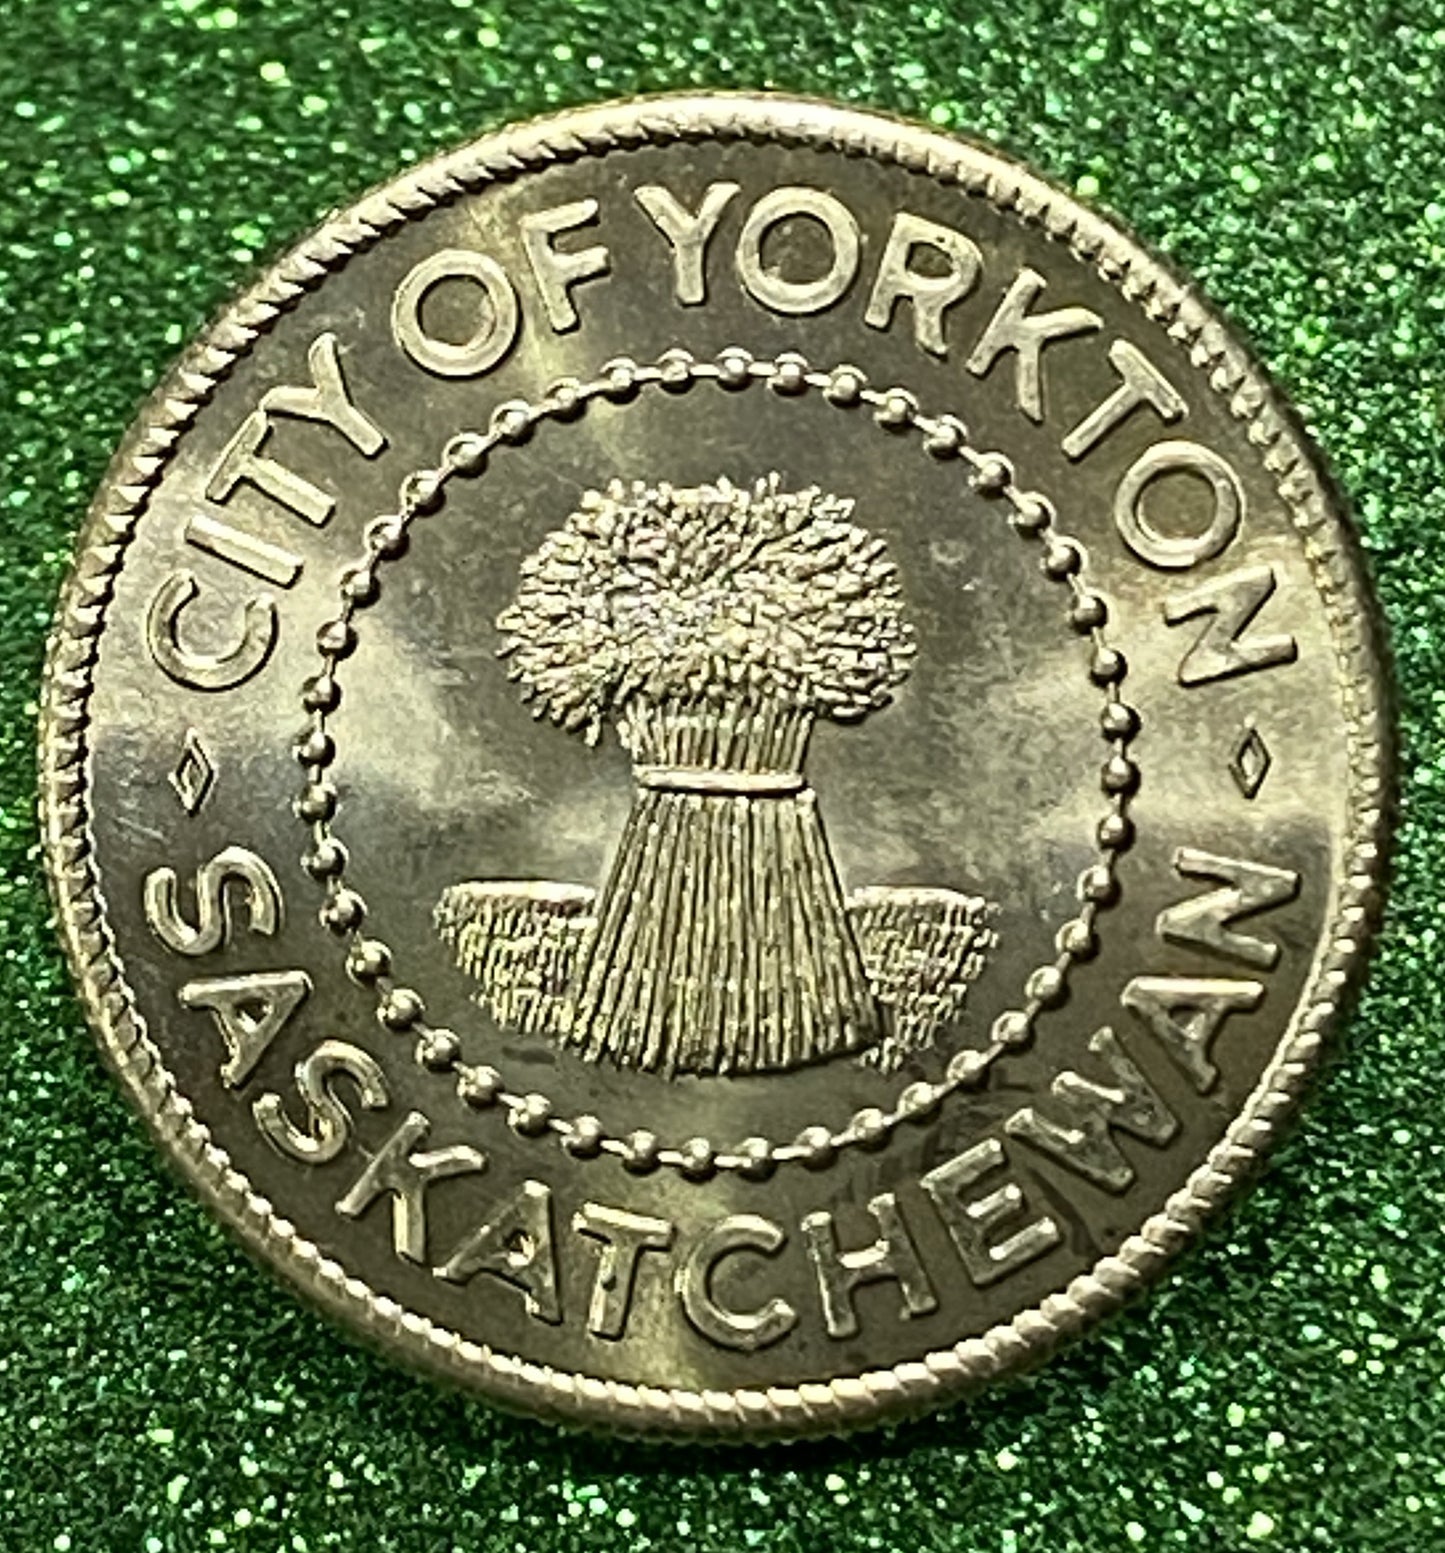 CITY OF YORKTON SASKATCHEWAN TOKEN SOUVENIR  CANADIAN COIN VF/UNC 1977